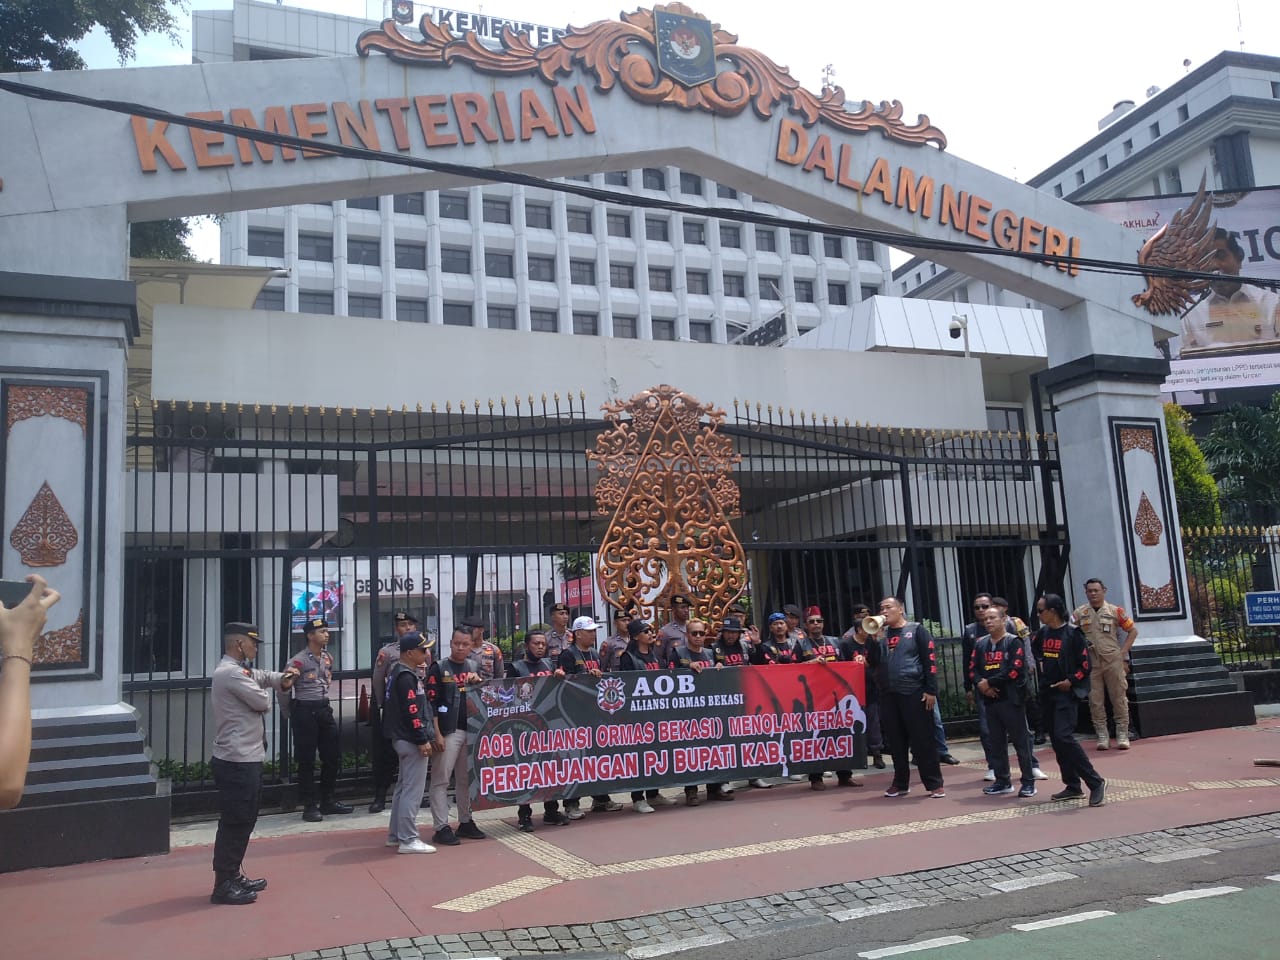 Aliansi Ormas Bekasi (AOB) Demo ke Mendagri Tolak Perpanjangan Pj Bupati Bekasi Dani Ramdan